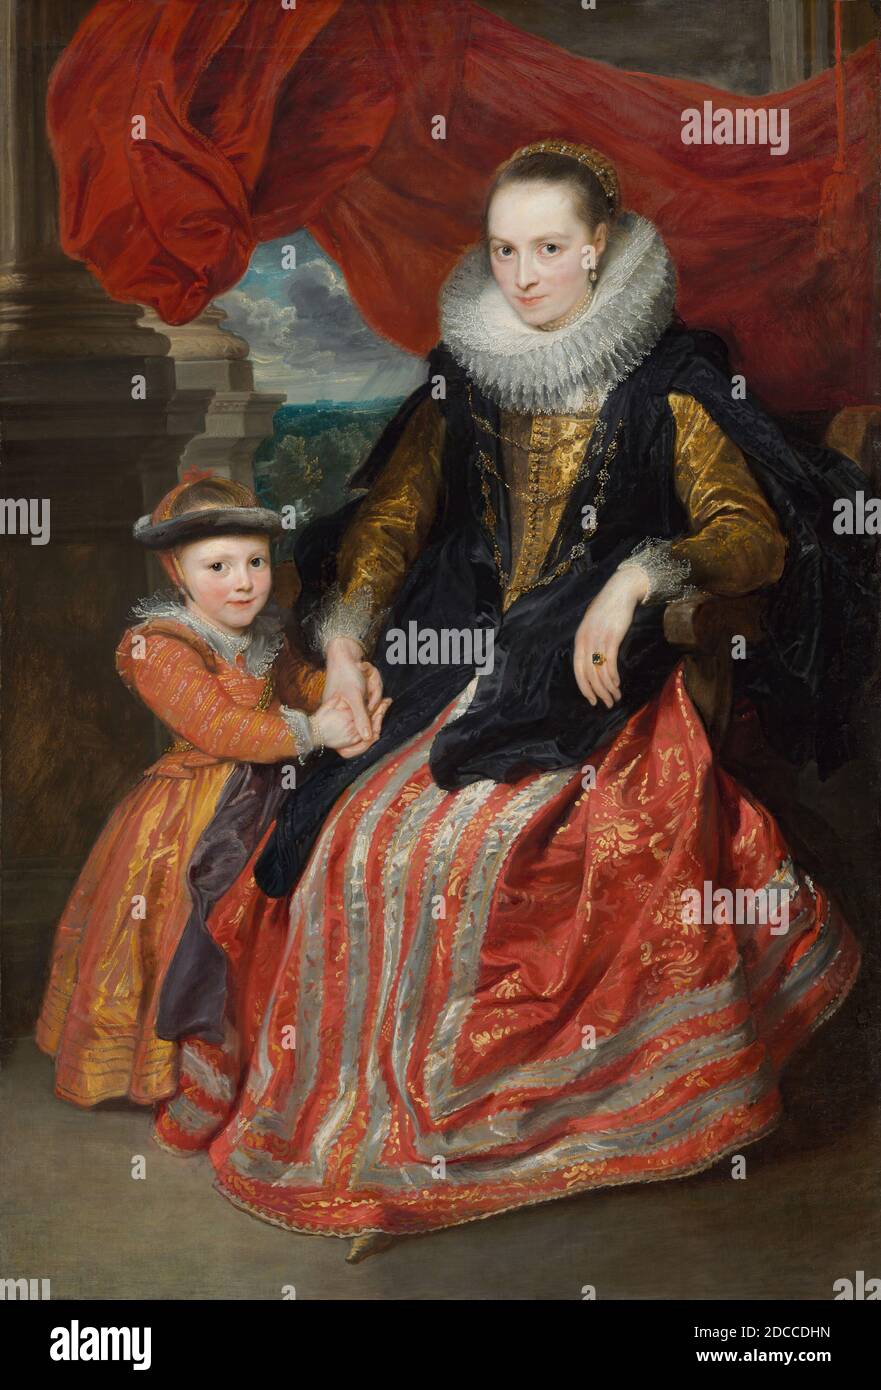 Sir Anthony van Dyck, (peintre), Flamand, 1599 - 1641, Susanna Fourment et sa fille, 1621, huile sur toile, total: 172 × 117 cm, 106 lb. (67 11/16 × 46 1/16 po, 48.081 kg), encadré : 204.47 × 149.86 × 12.7 cm (80 1/2 × 59 × 5 po), dans cette image tendre d'une mère et d'une fille, Anthony van Dyck a fait part de toutes ses capacités artistiques. Même dans un portrait formel comme celui-ci, il a su capturer la chaleur, l'amour et la réconfort de la relation parent-enfant par le regard, le geste et même le roulement. La femme est presque certainement Susanna Fourment Banque D'Images